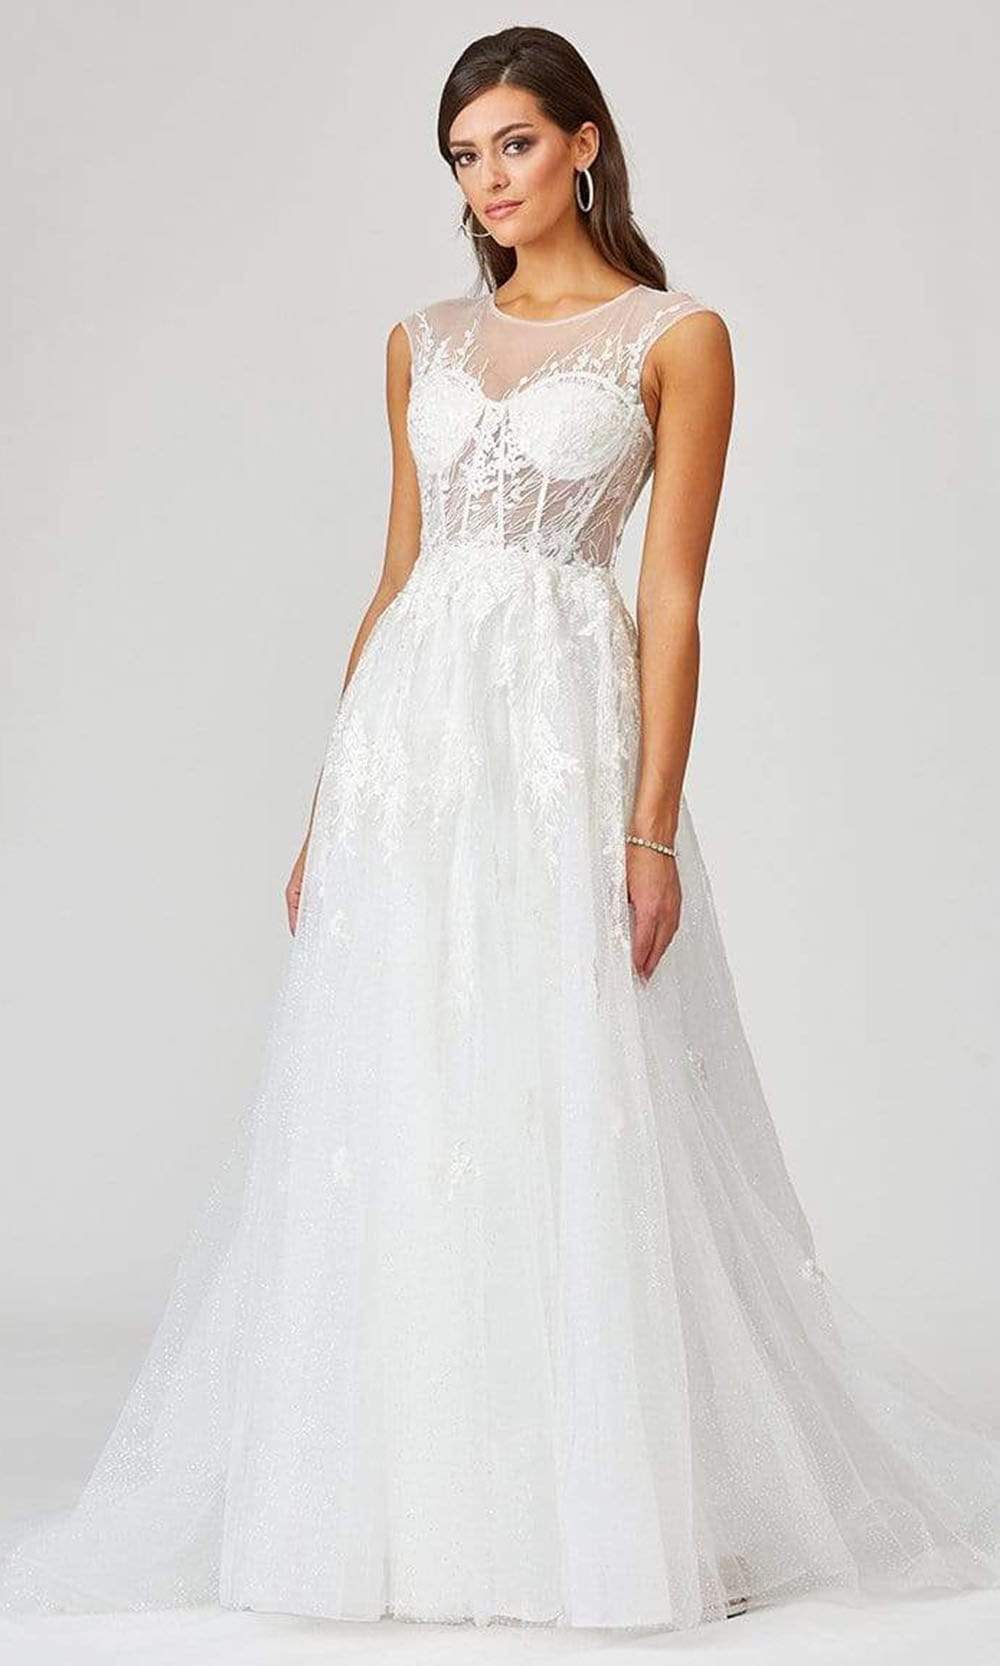 Lara Dresses - 51044 Embellished A-Line Dress Wedding Dresses 0 / Ivory